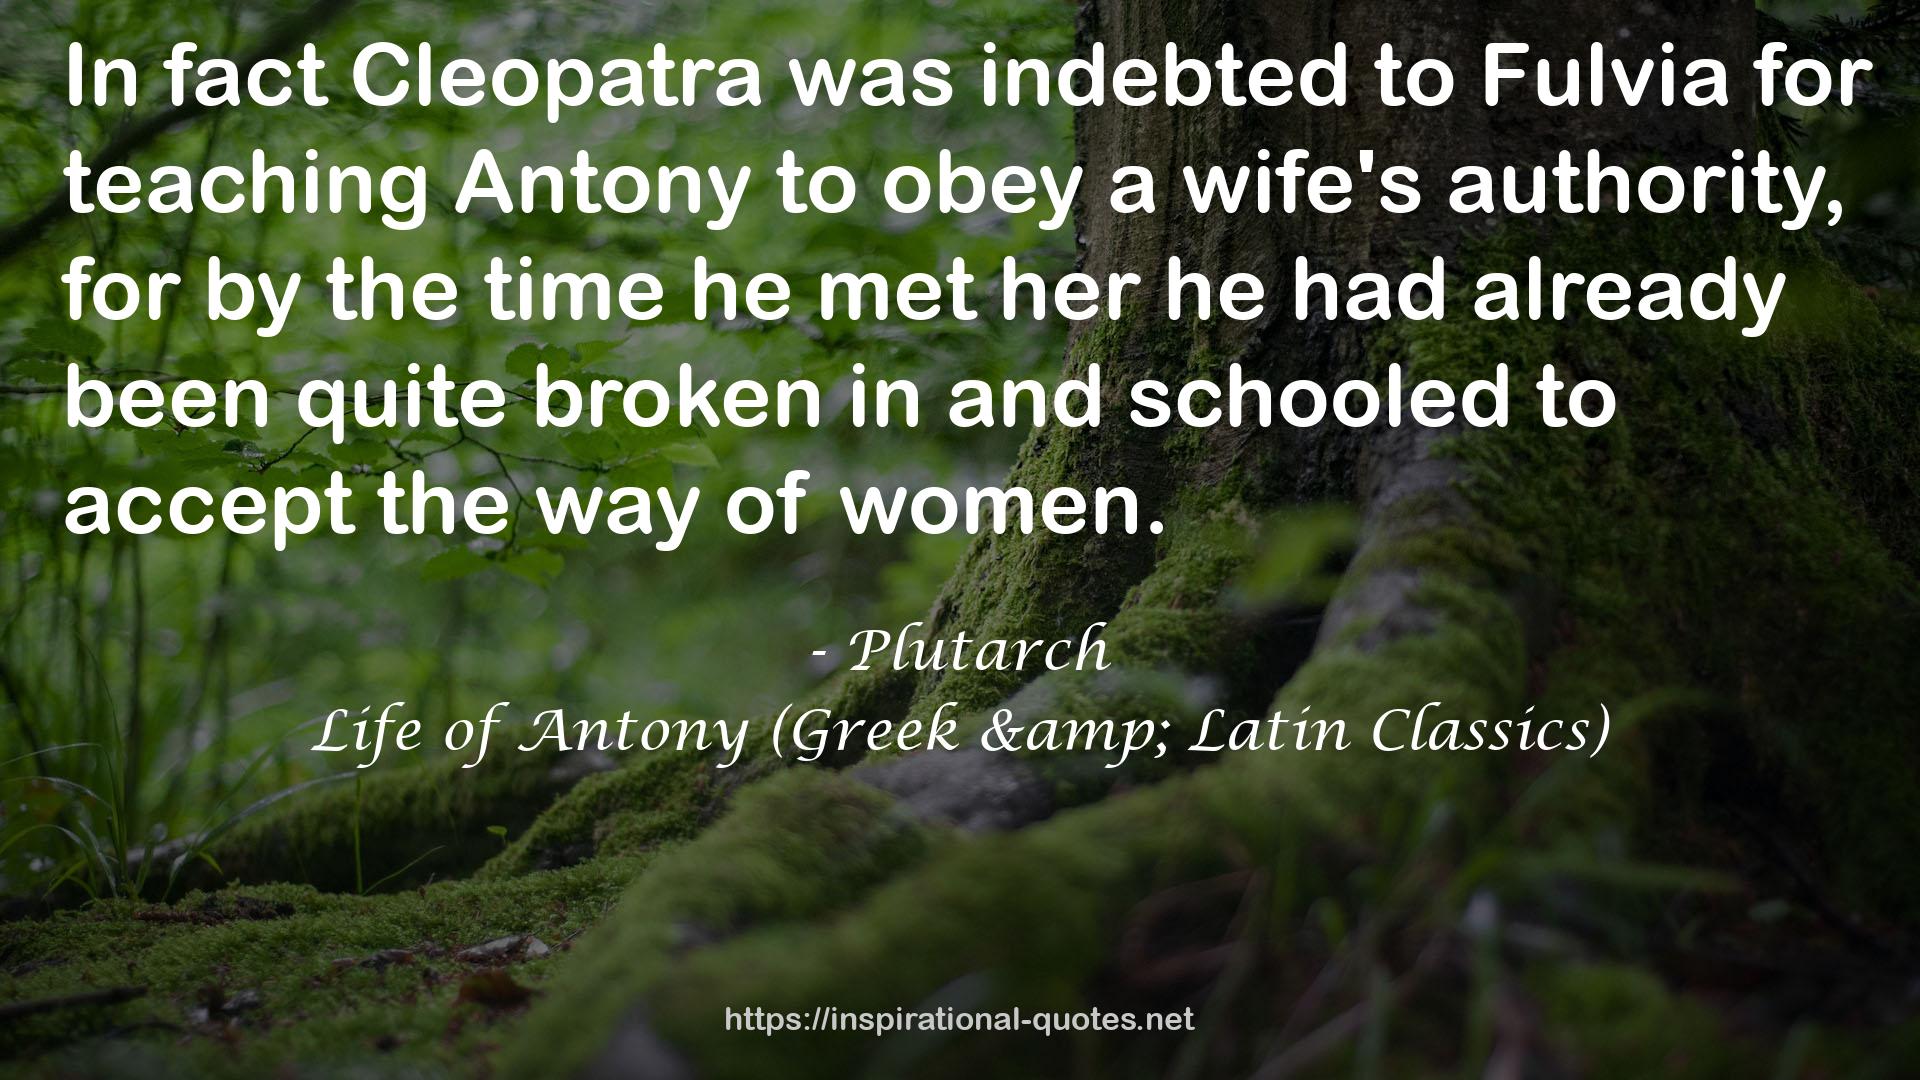 Life of Antony (Greek & Latin Classics) QUOTES